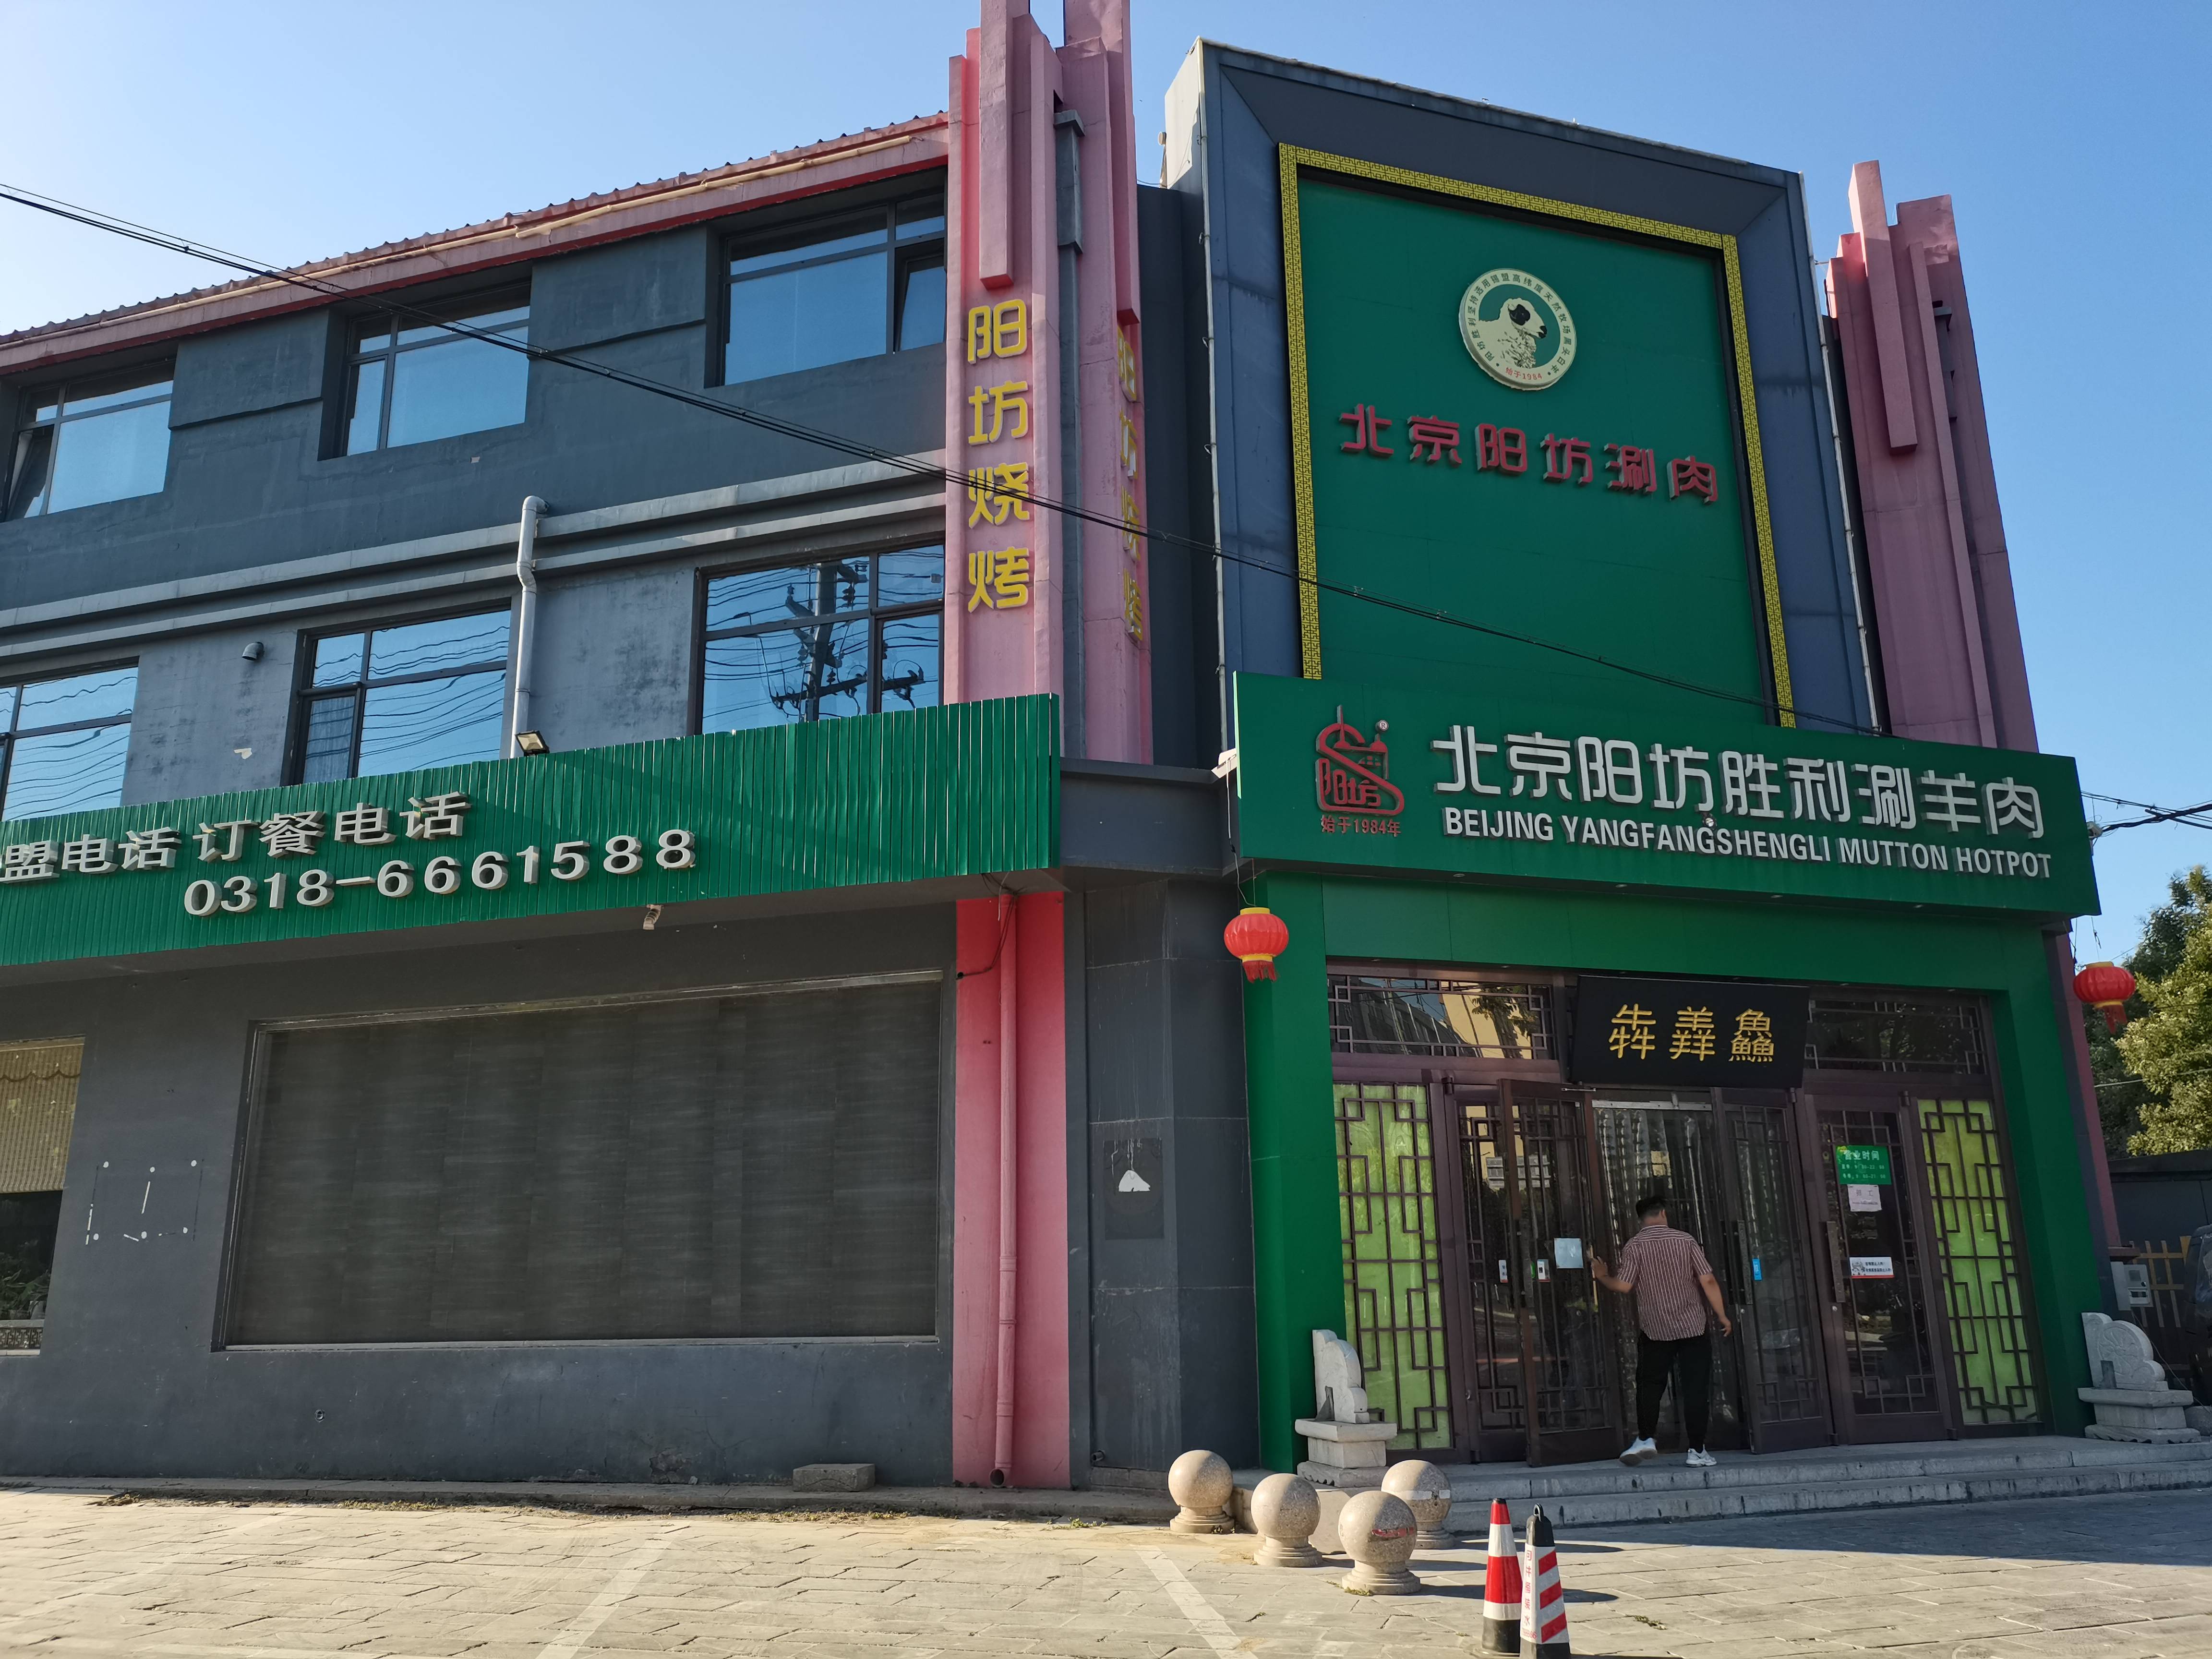 阳坊胜利涮羊肉衡水总店从北京总部加盟已经有6年的时间,该店位于衡水